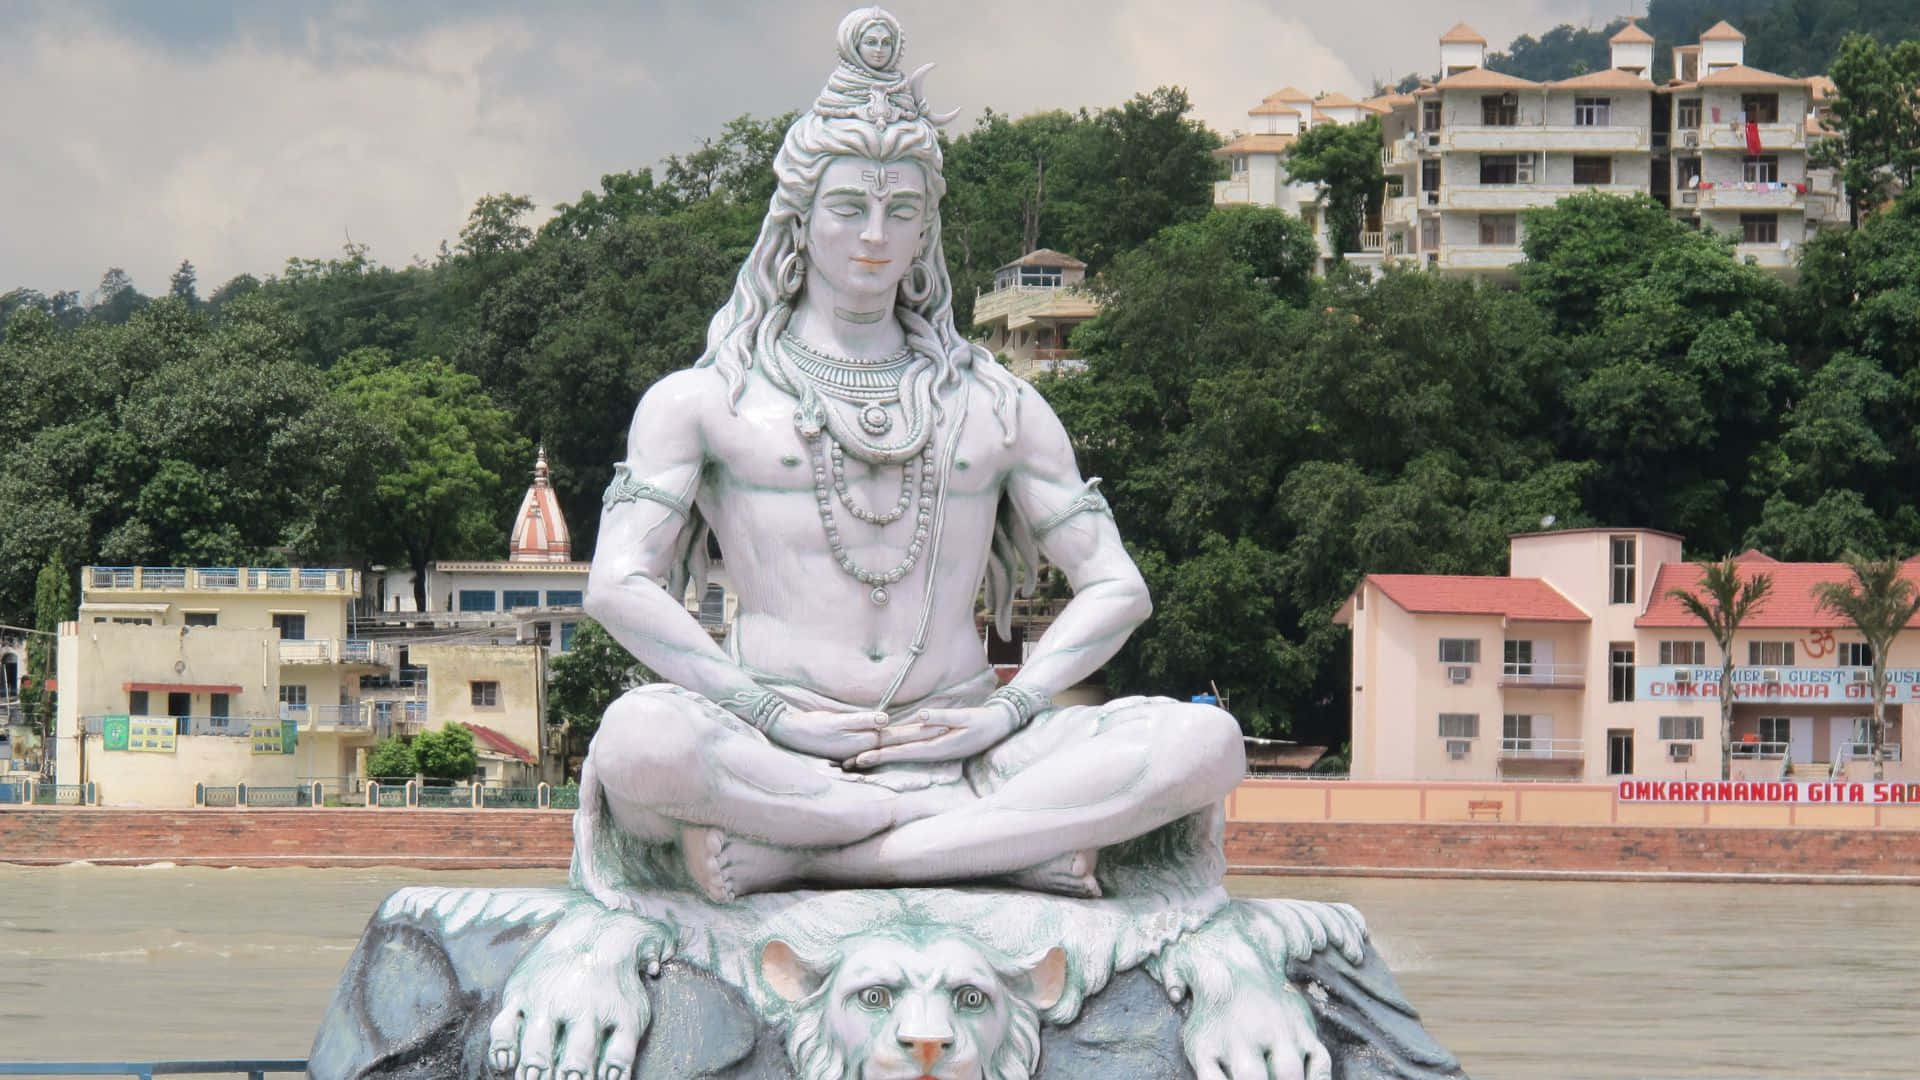 Enstatue Af Lord Shiva, Der Sidder På Toppen Af En Flod.